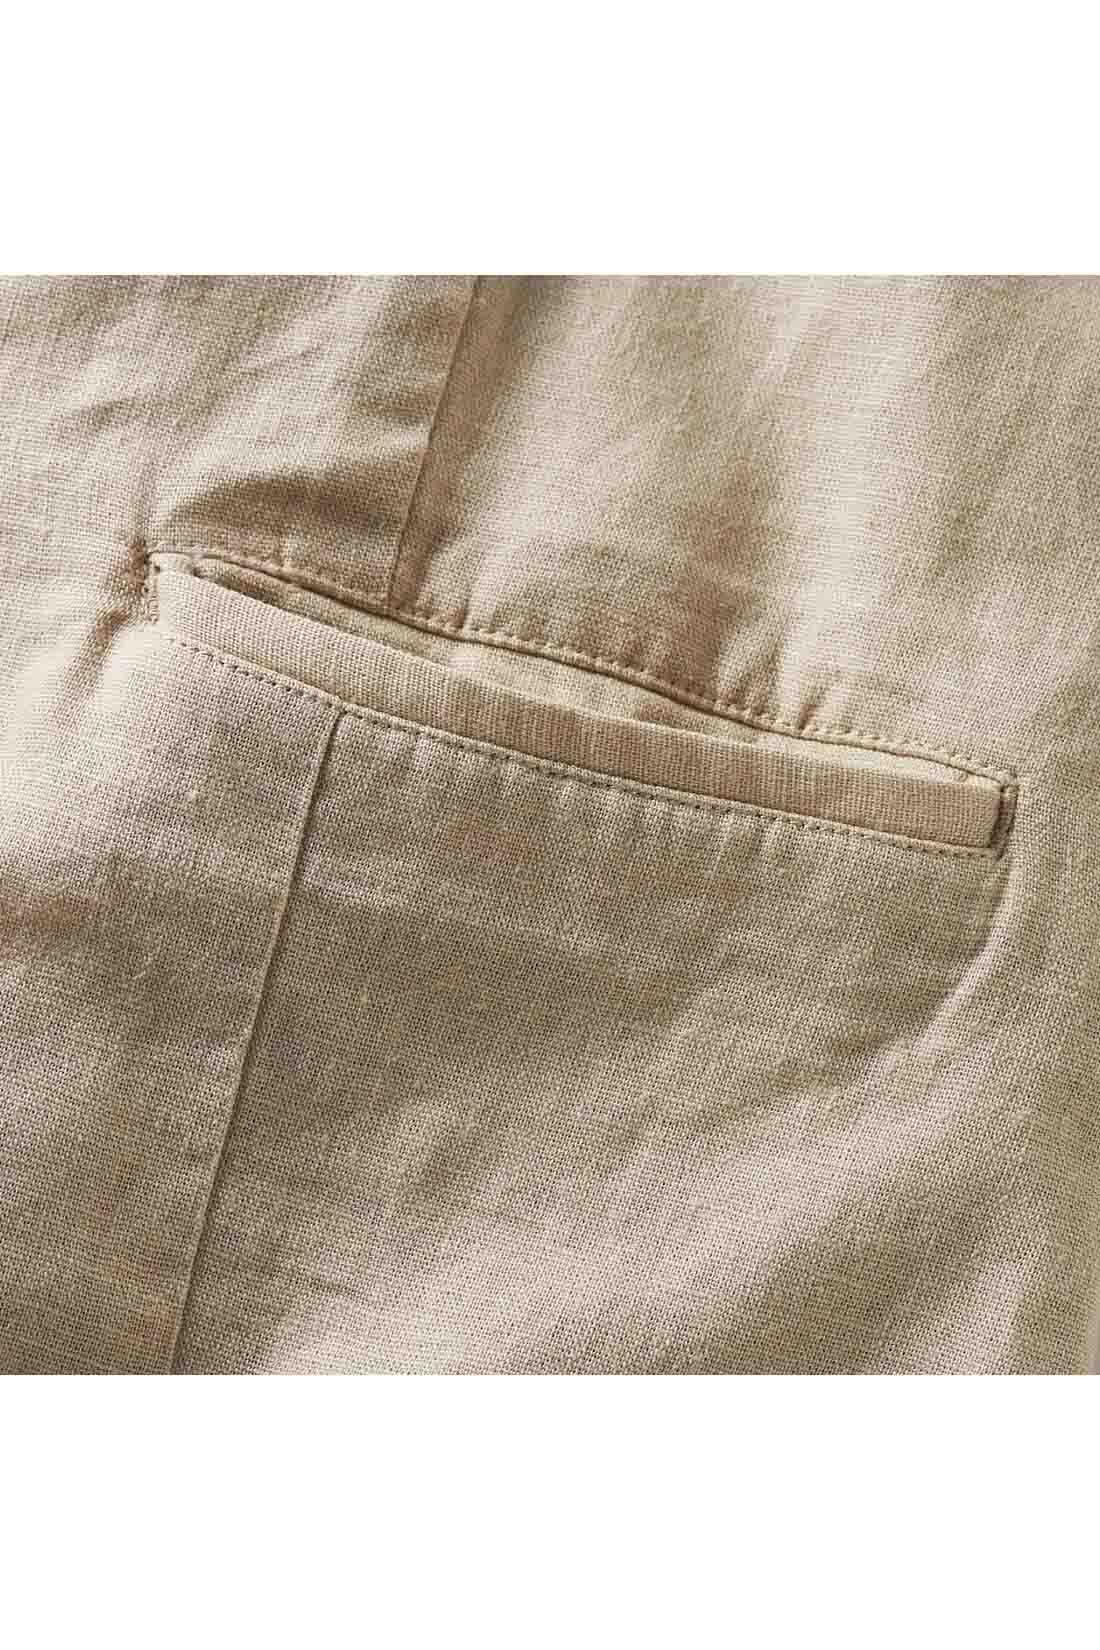 Real Stock|IEDIT[イディット]　リネン混素材で上質にこなれる きれい見えジャケット〈キャメル〉|ポケットのフラップ部分をポケットに差し込むと玉縁デザインに。※お届けするカラーとは異なります。